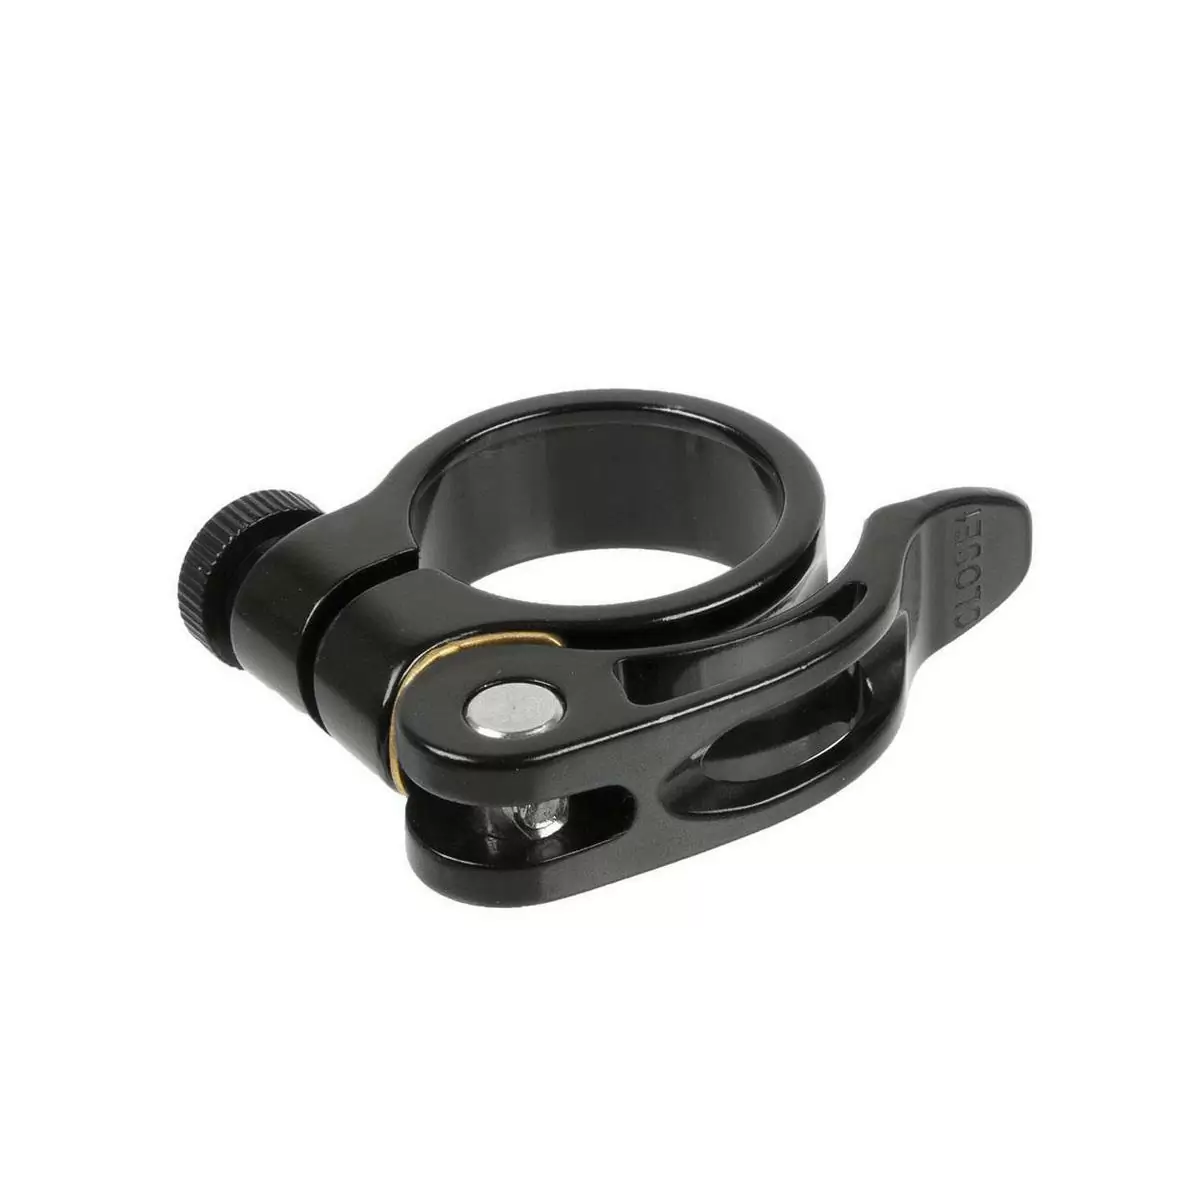 seatpost clamp 31,8mm quick release qr black - image